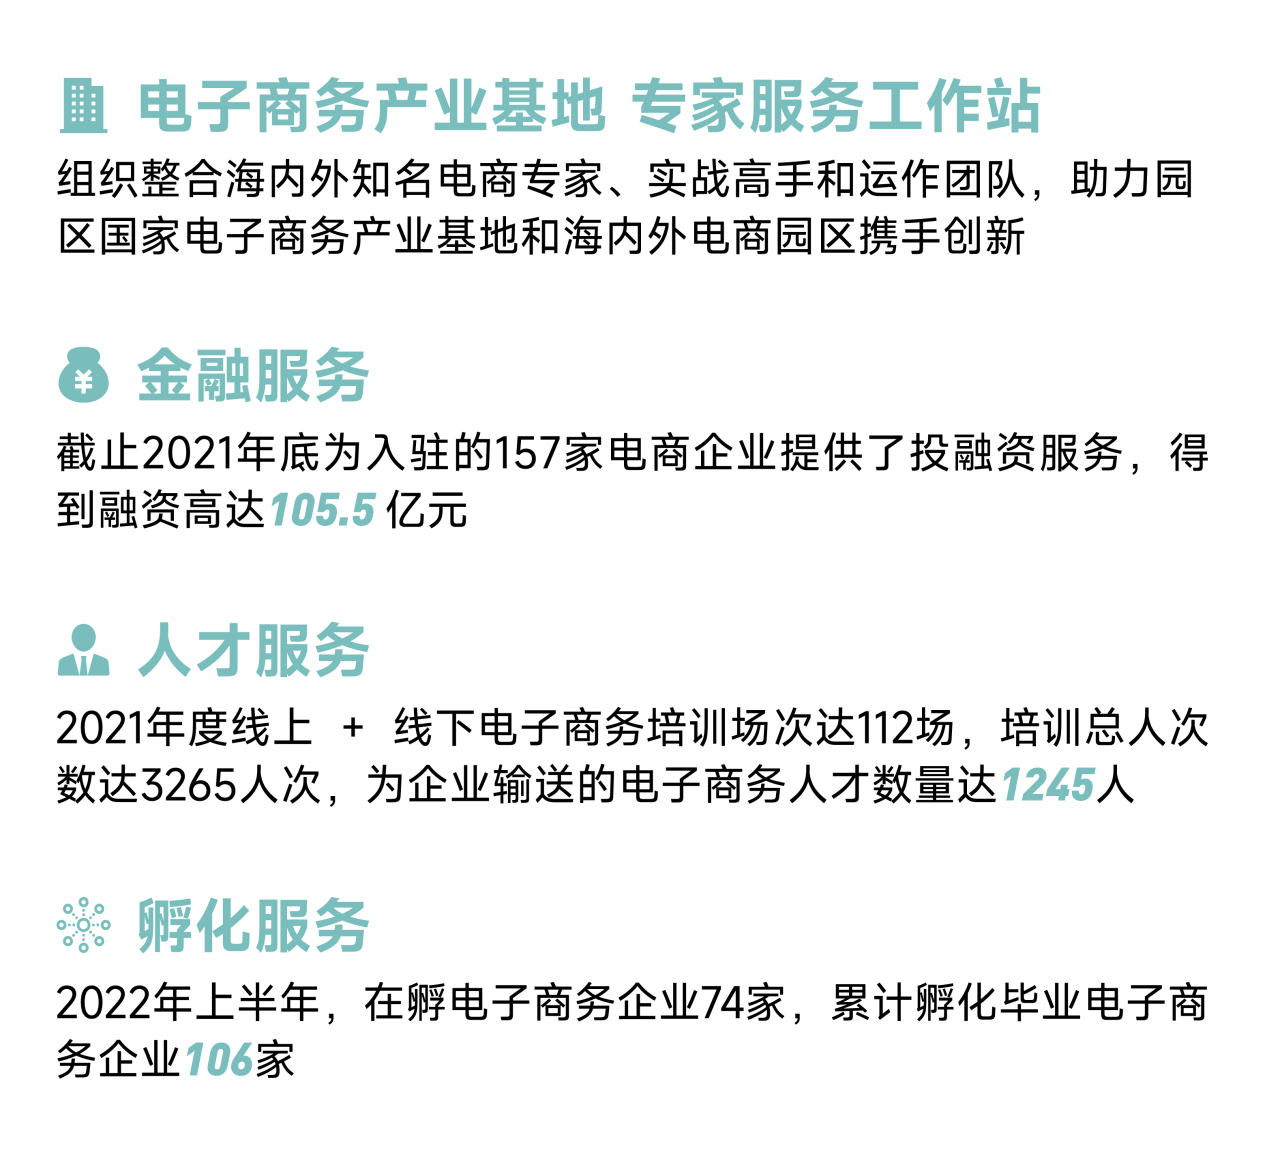 深圳·星河WORLD 荣获四大国家级资质优秀园区